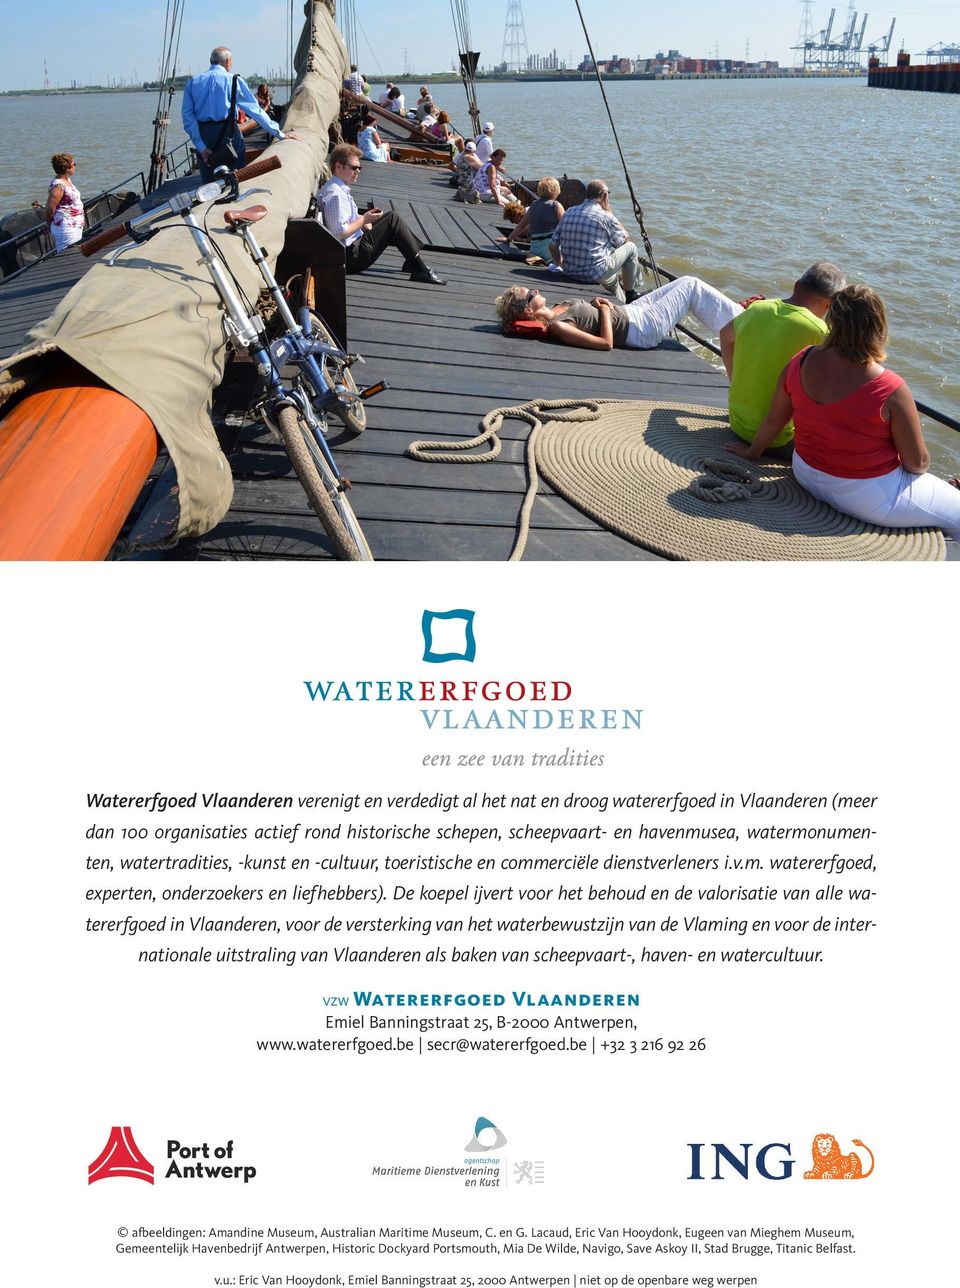 De koepel ijvert voor het behoud en de valorisatie van alle watererfgoed in Vlaanderen, voor de versterking van het waterbewustzijn van de Vlaming en voor de internationale uitstraling van Vlaanderen